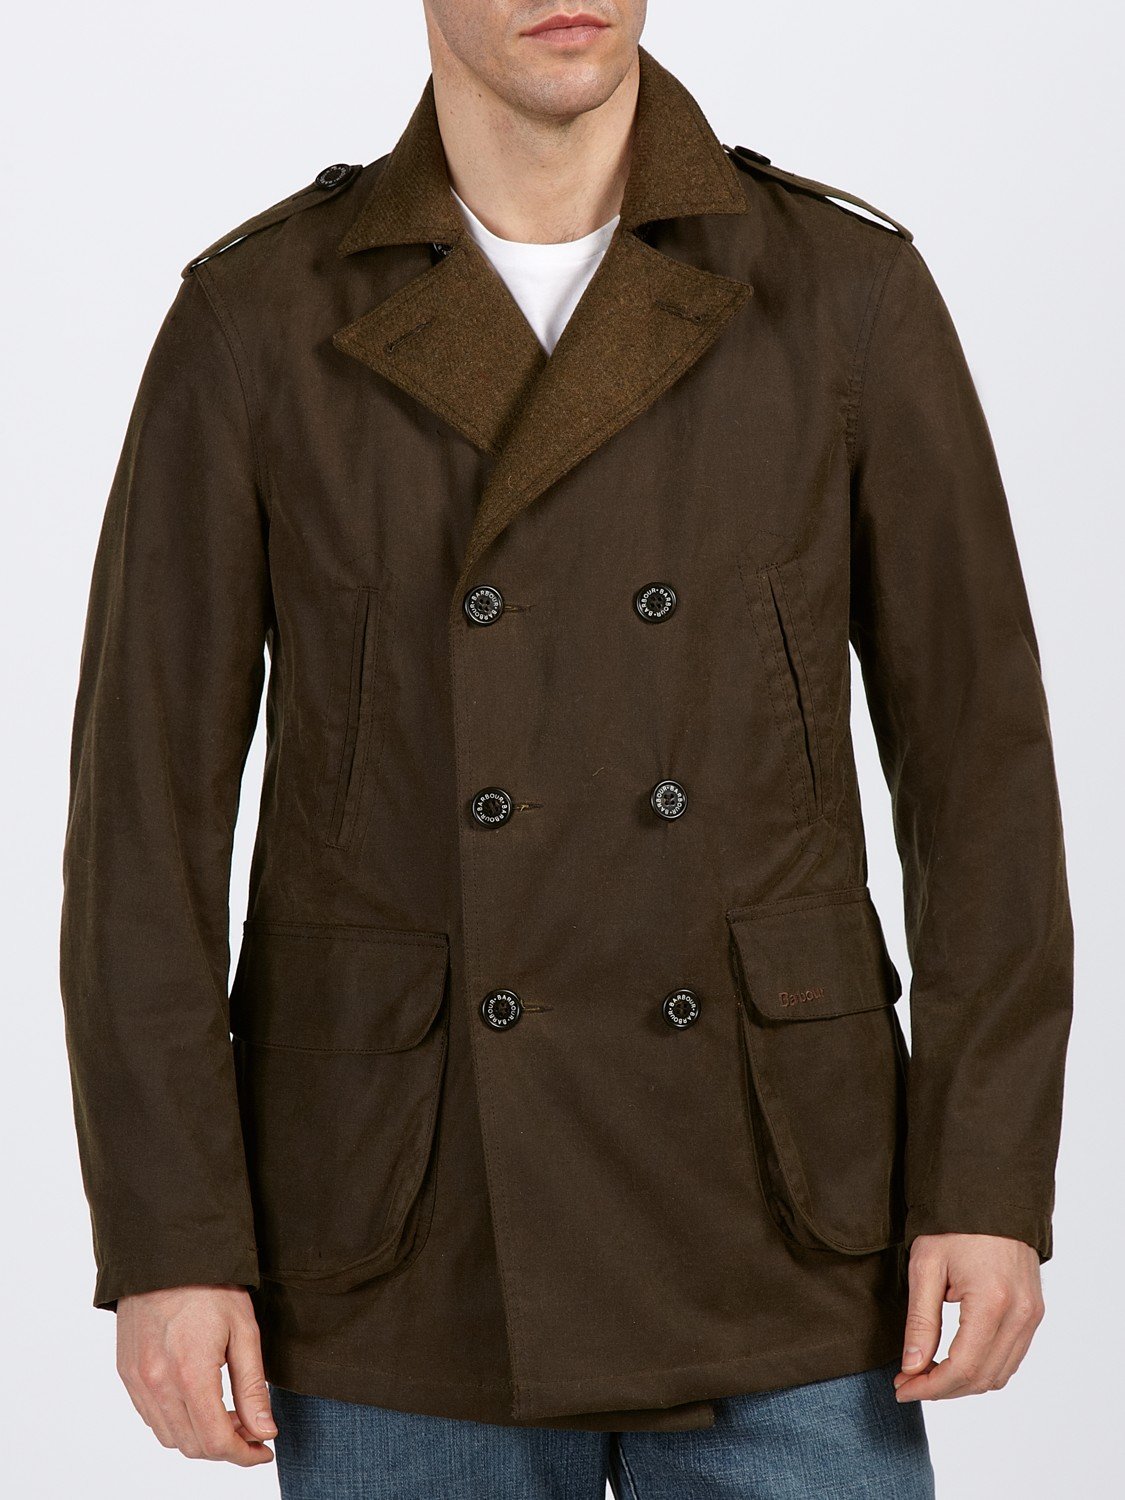 barbour-brown-shovler-4-pocket-jacket-product-2-12062328-500809407.jpeg